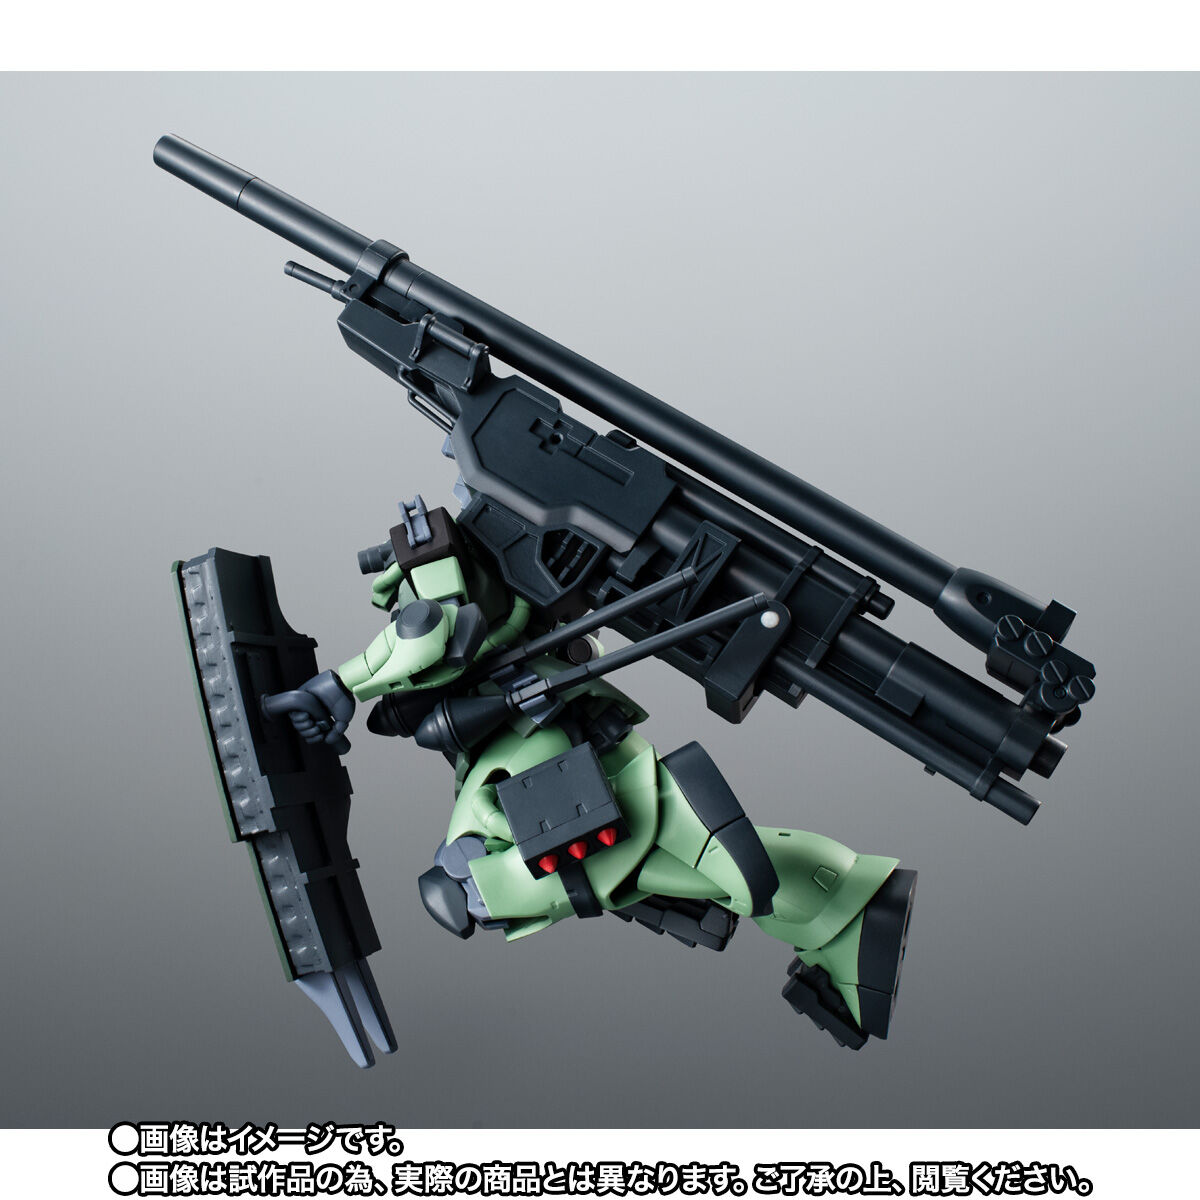 【限定販売】ROBOT魂〈SIDE MS〉『MS-06F ザクII （砲手用） ver. A.N.I.M.E.』機動戦士ガンダム0083 with ファントム・ブレット 可動フィギュア-005